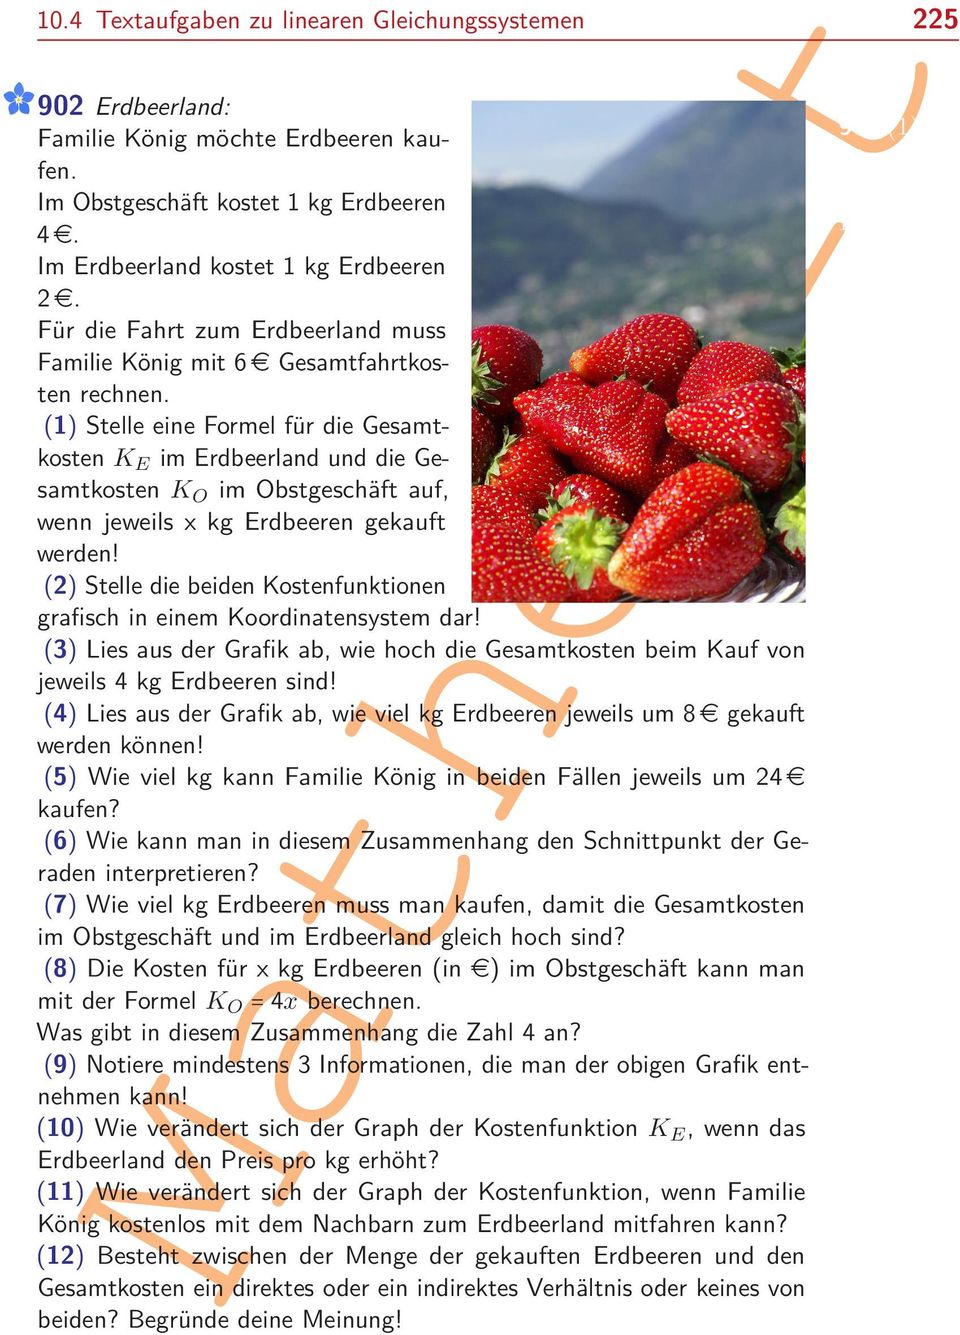 (1) Stelle eine Formel für die Gesamtkosten KE im Erdbeerland und die Gesamtkosten KO im Obstgeschäft auf, wenn jeweils x kg Erdbeeren gekauft werden!